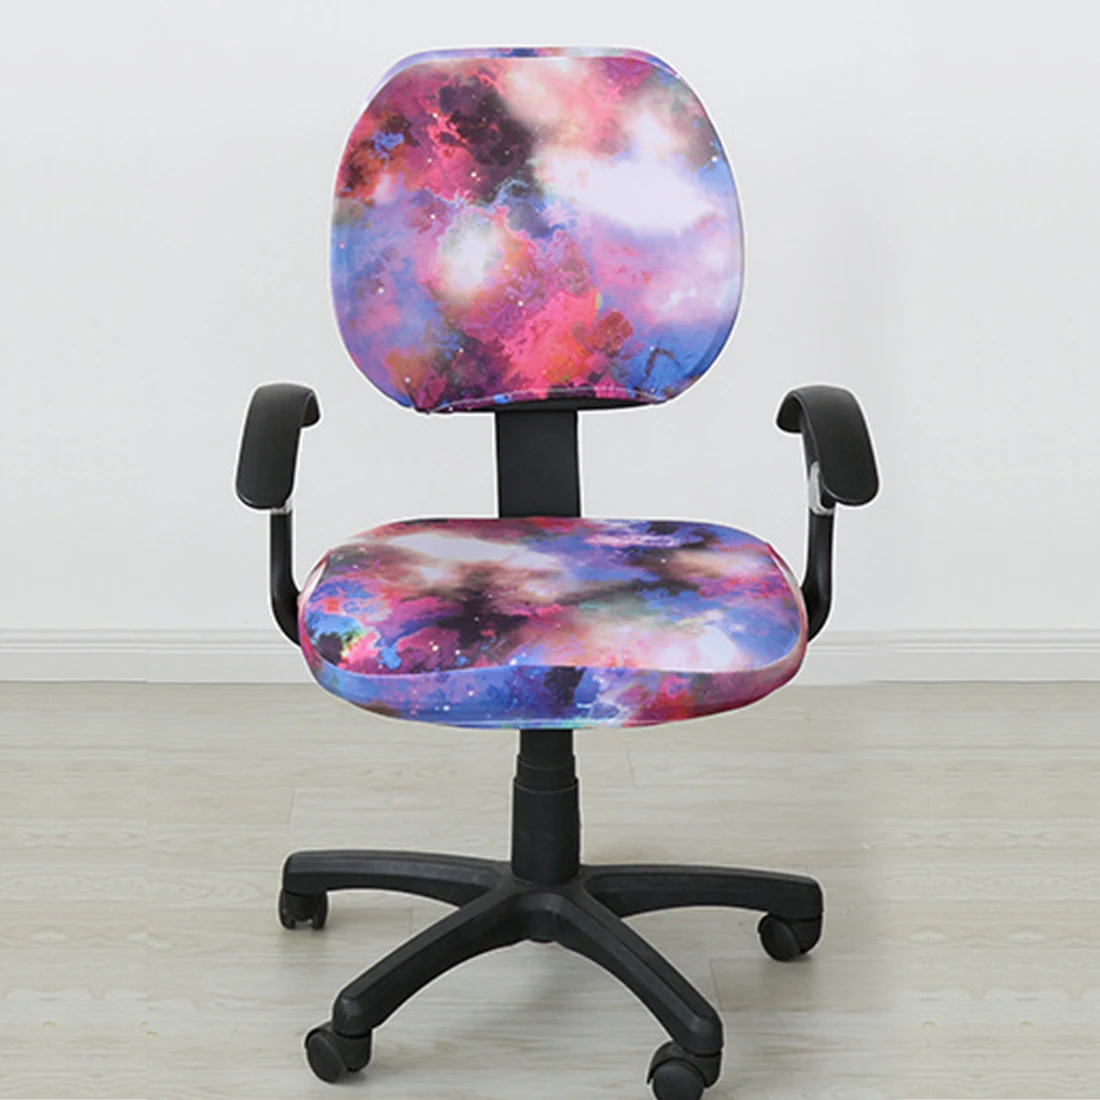 20 цветов, съемные чехлы для стульев из спандекса, эластичные Чехлы для офисных стульев для компьютерного стула, декоративное покрытие - Цвет: 2